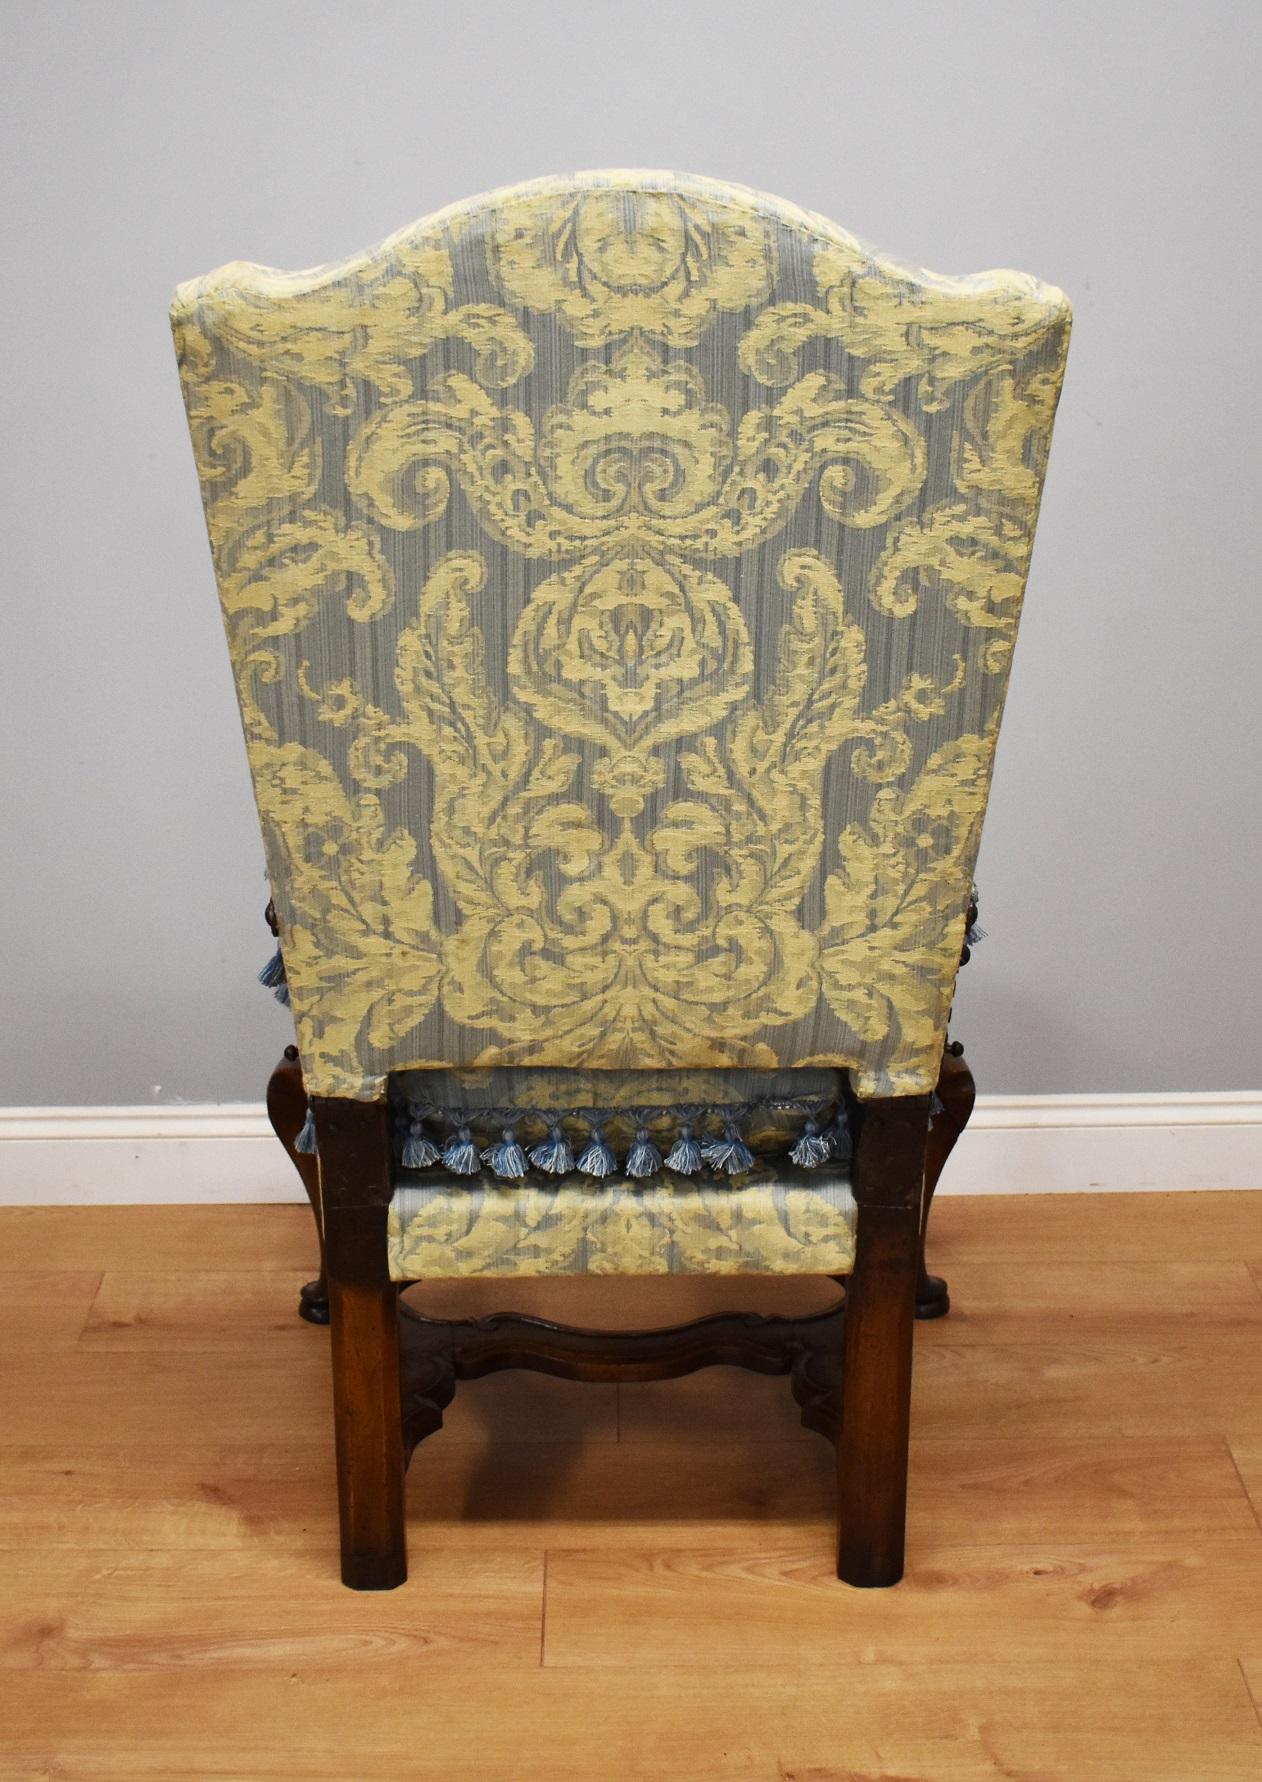 18th Century French Walnut Reclining Chair (Französisch)